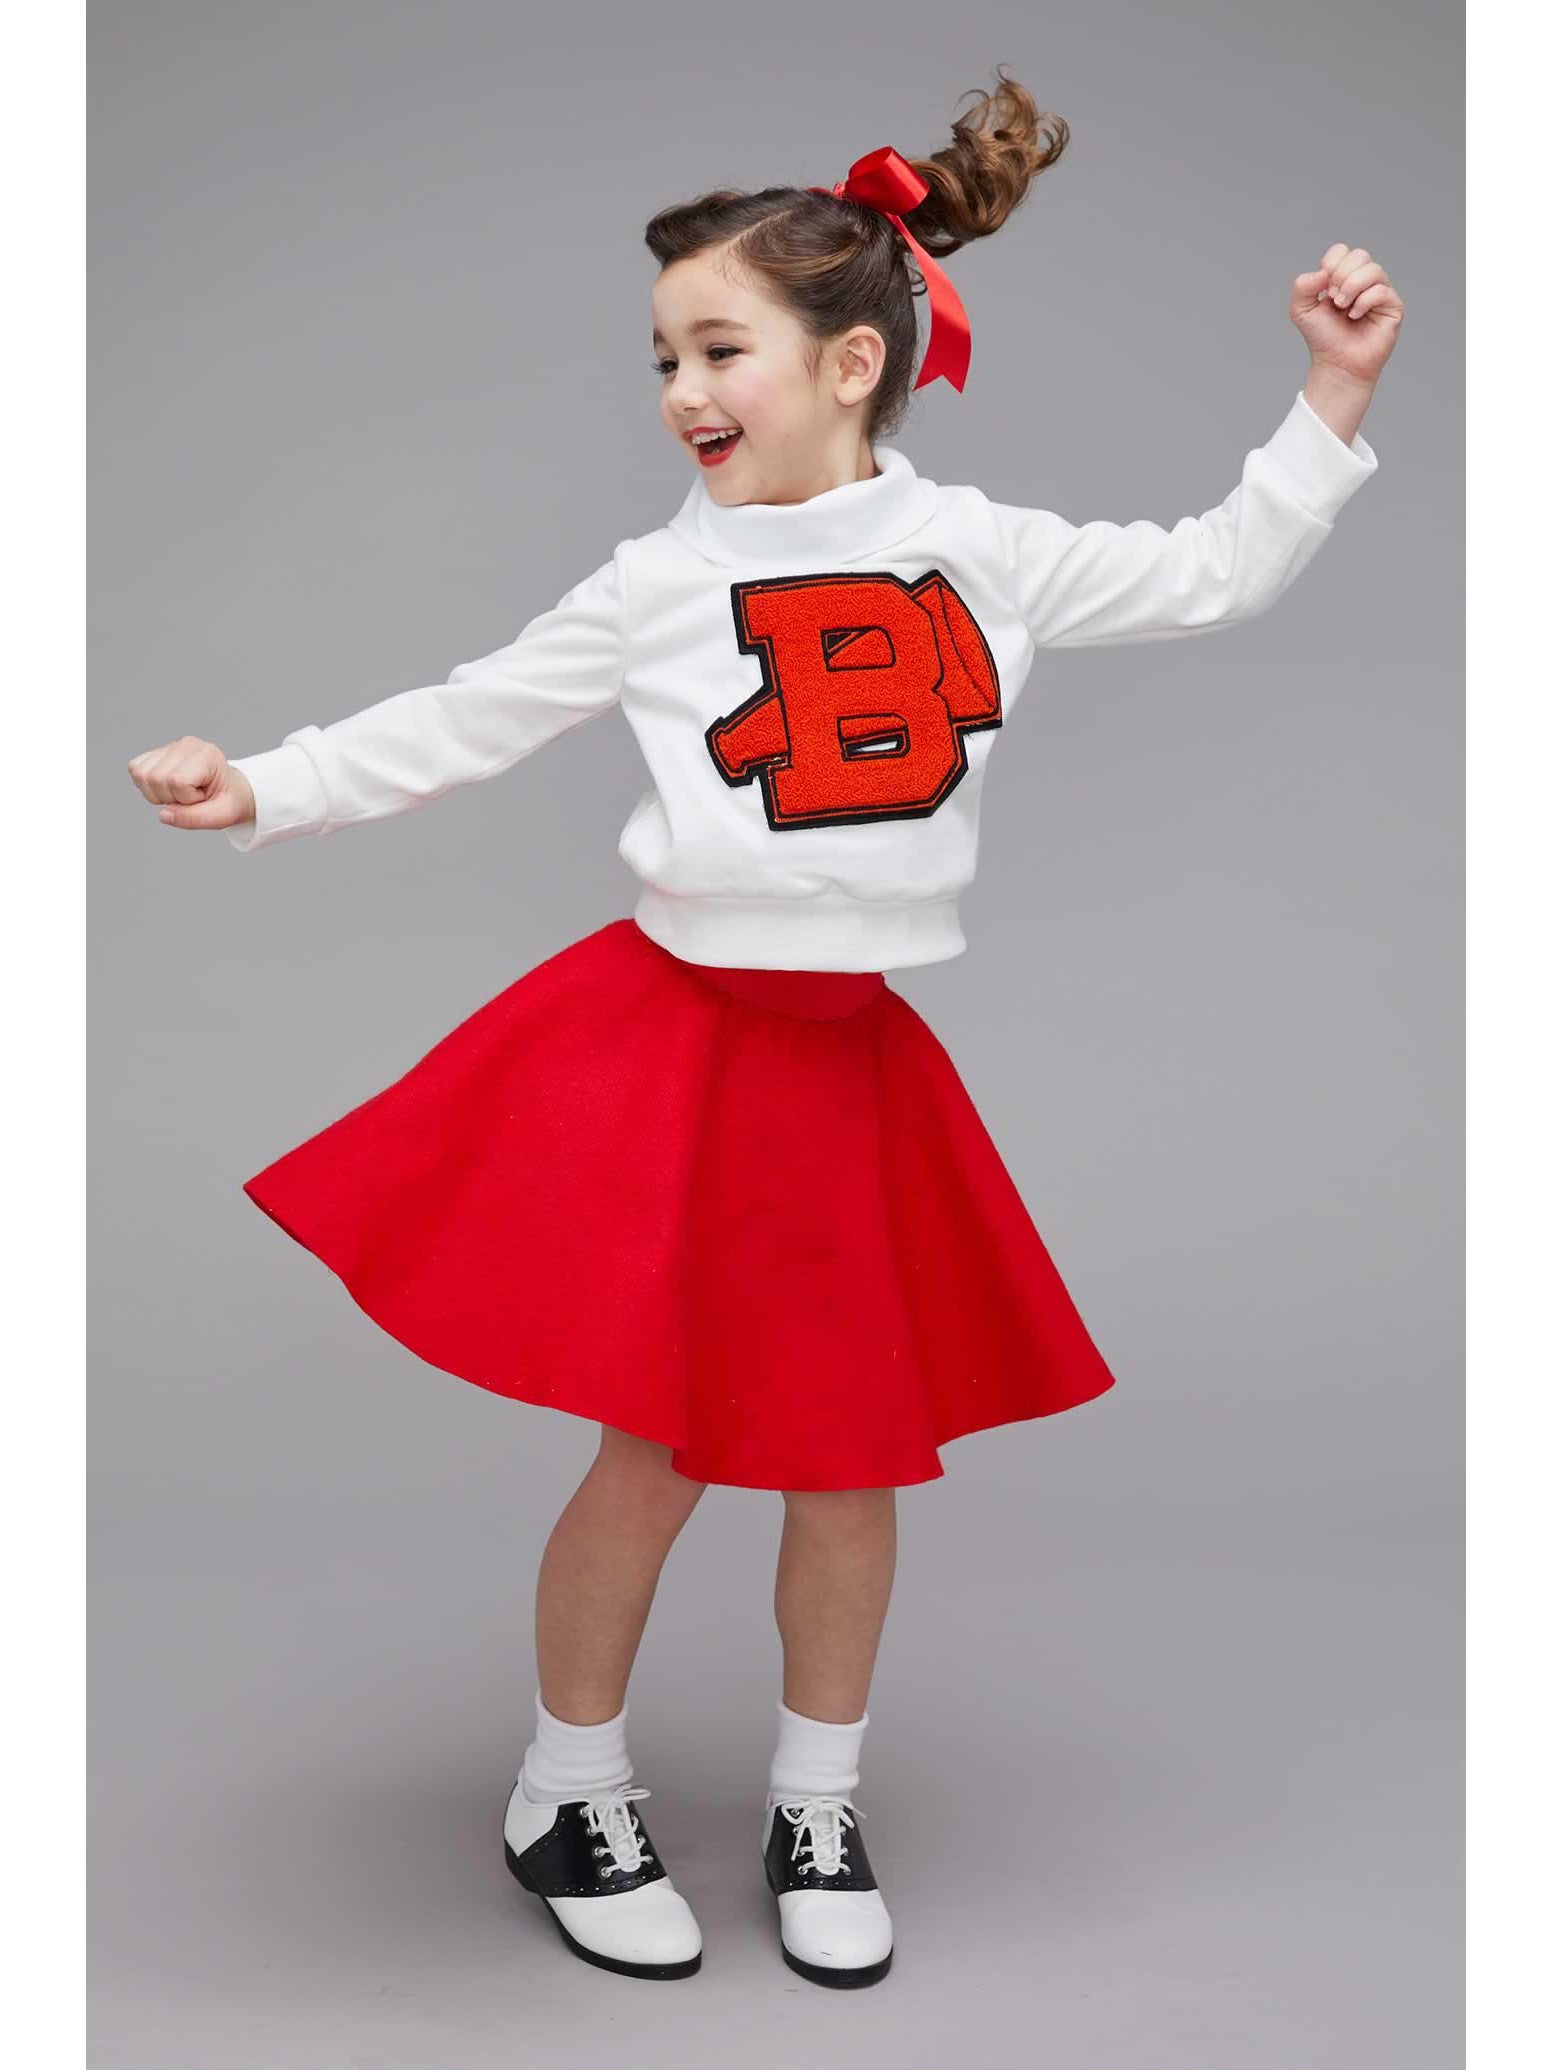 Afgrond Senator Montgomery 50s Cheerleader Costume for Girls – Chasing Fireflies